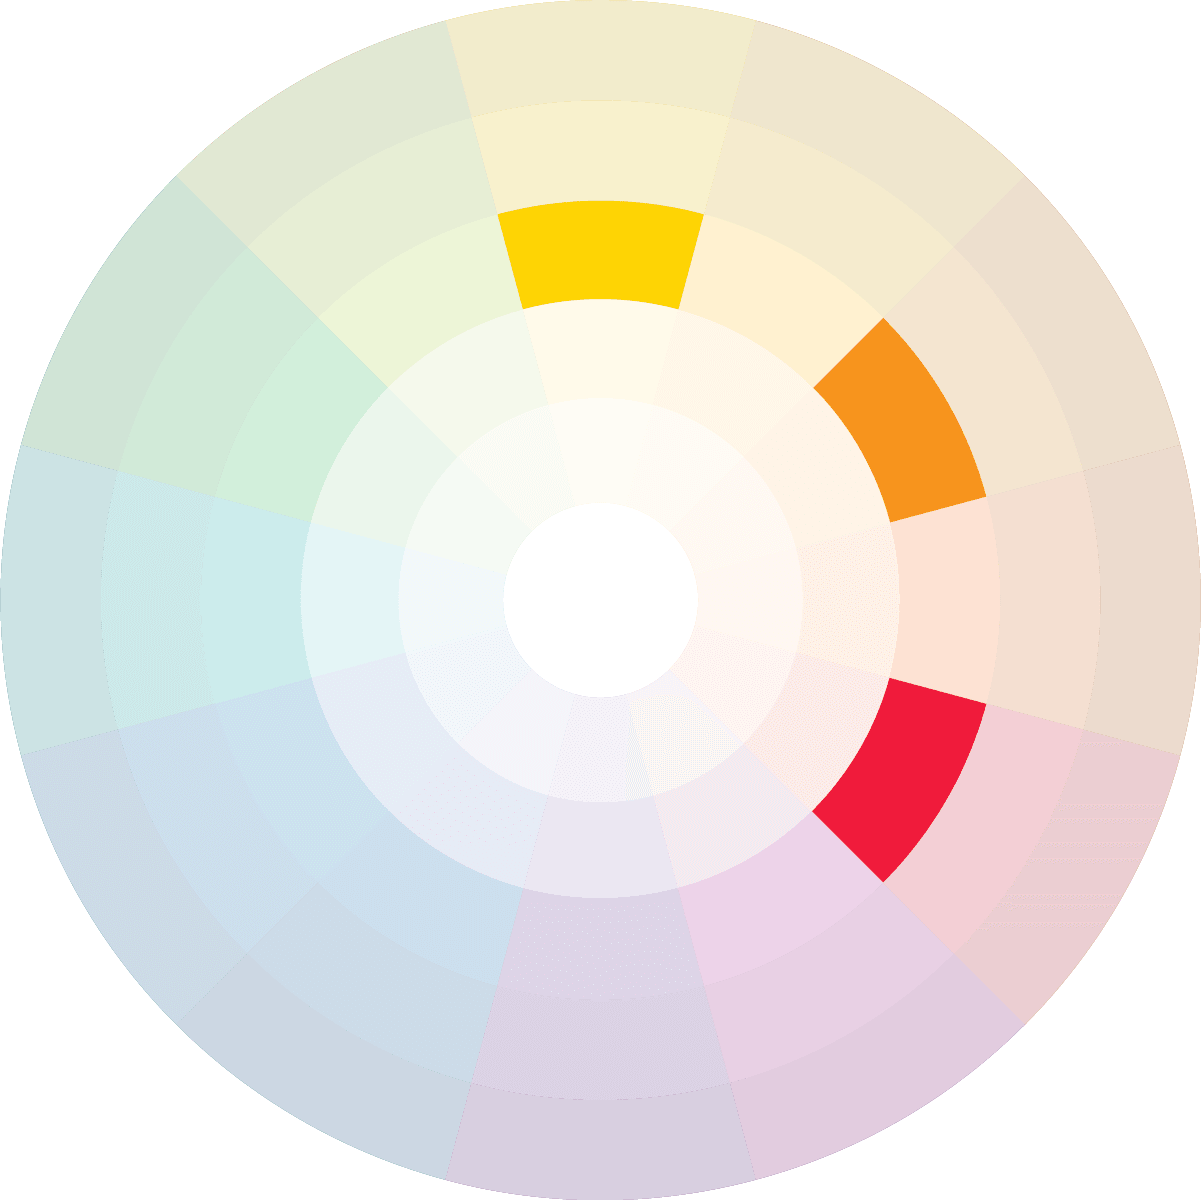 Cores análogas são diferentes, mas se complementam no Círculo Cromático como amarelo, laranja e vermelho das tintas Suvinil.